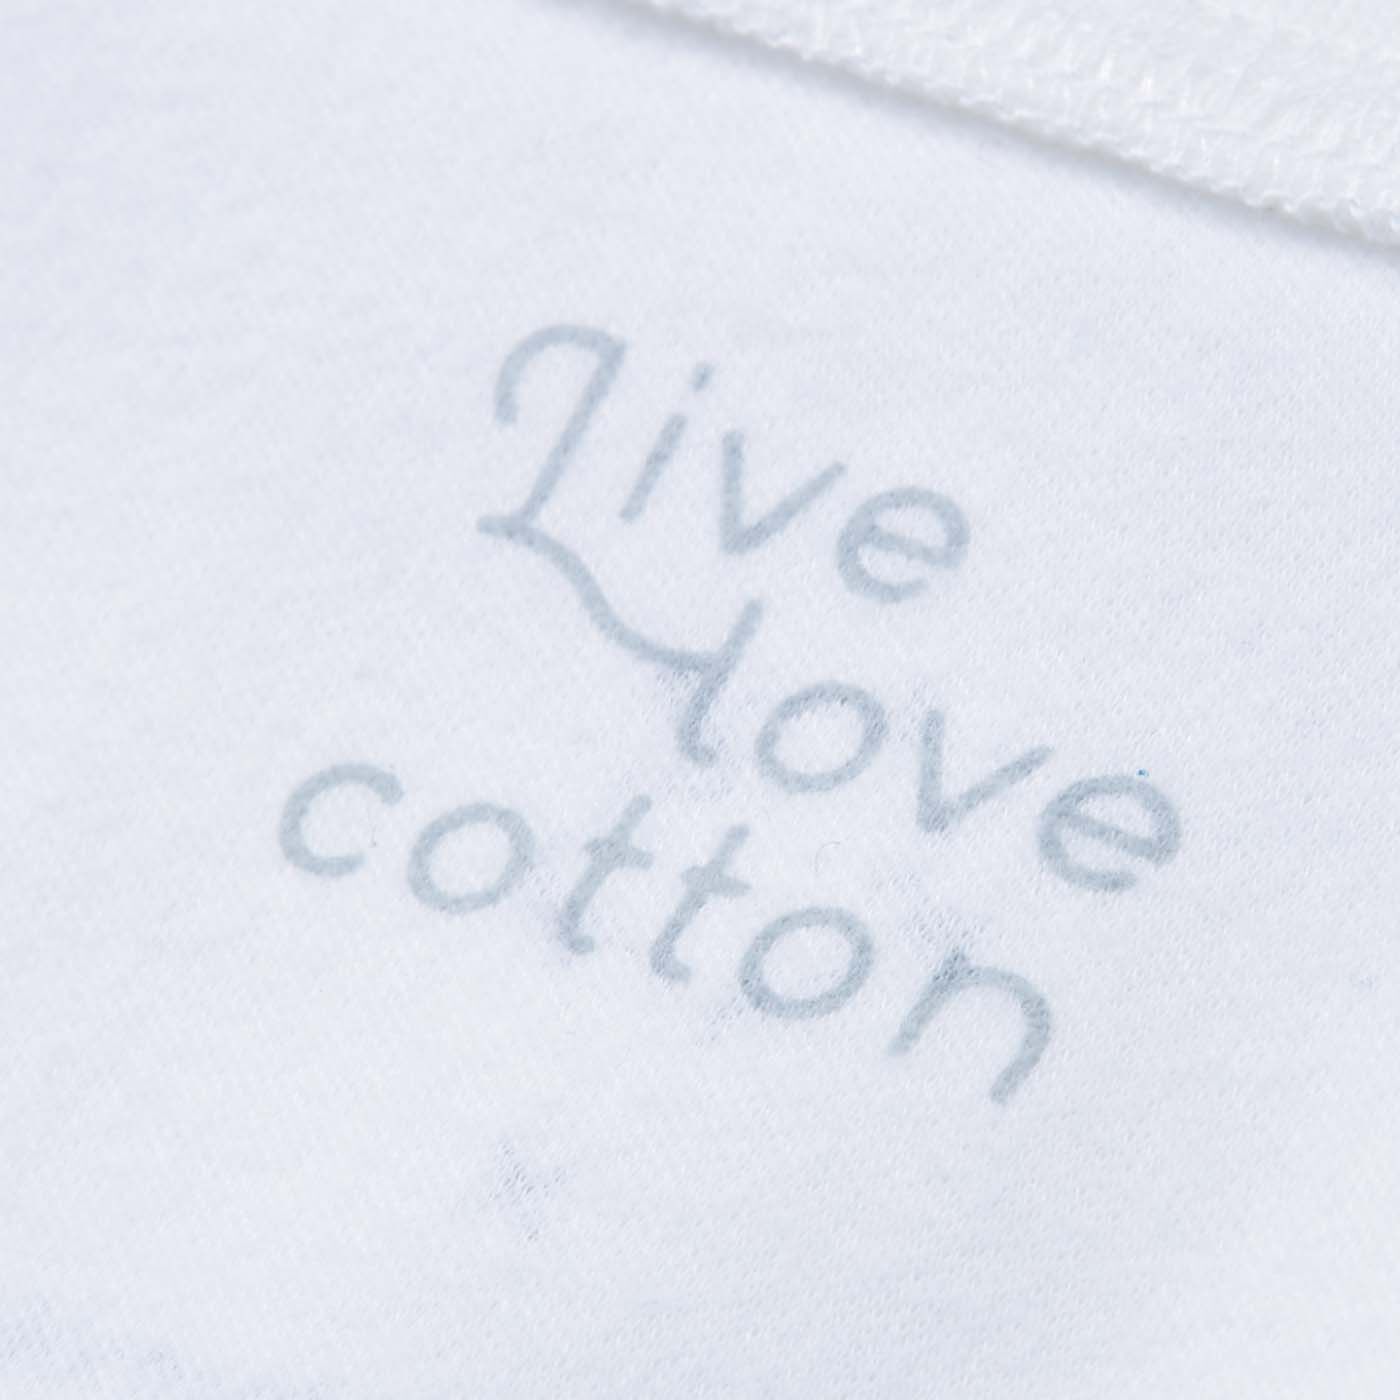 Real Stock|Live love cottonプロジェクト　el:ment×Yuko Yamamoto　平和が実る瞬間 内側ふんわりやわらか心地オーガニックコットンのロングTトップス 〈記憶の中にある種〉|背面内側には、Live love cottonのロゴ入り。